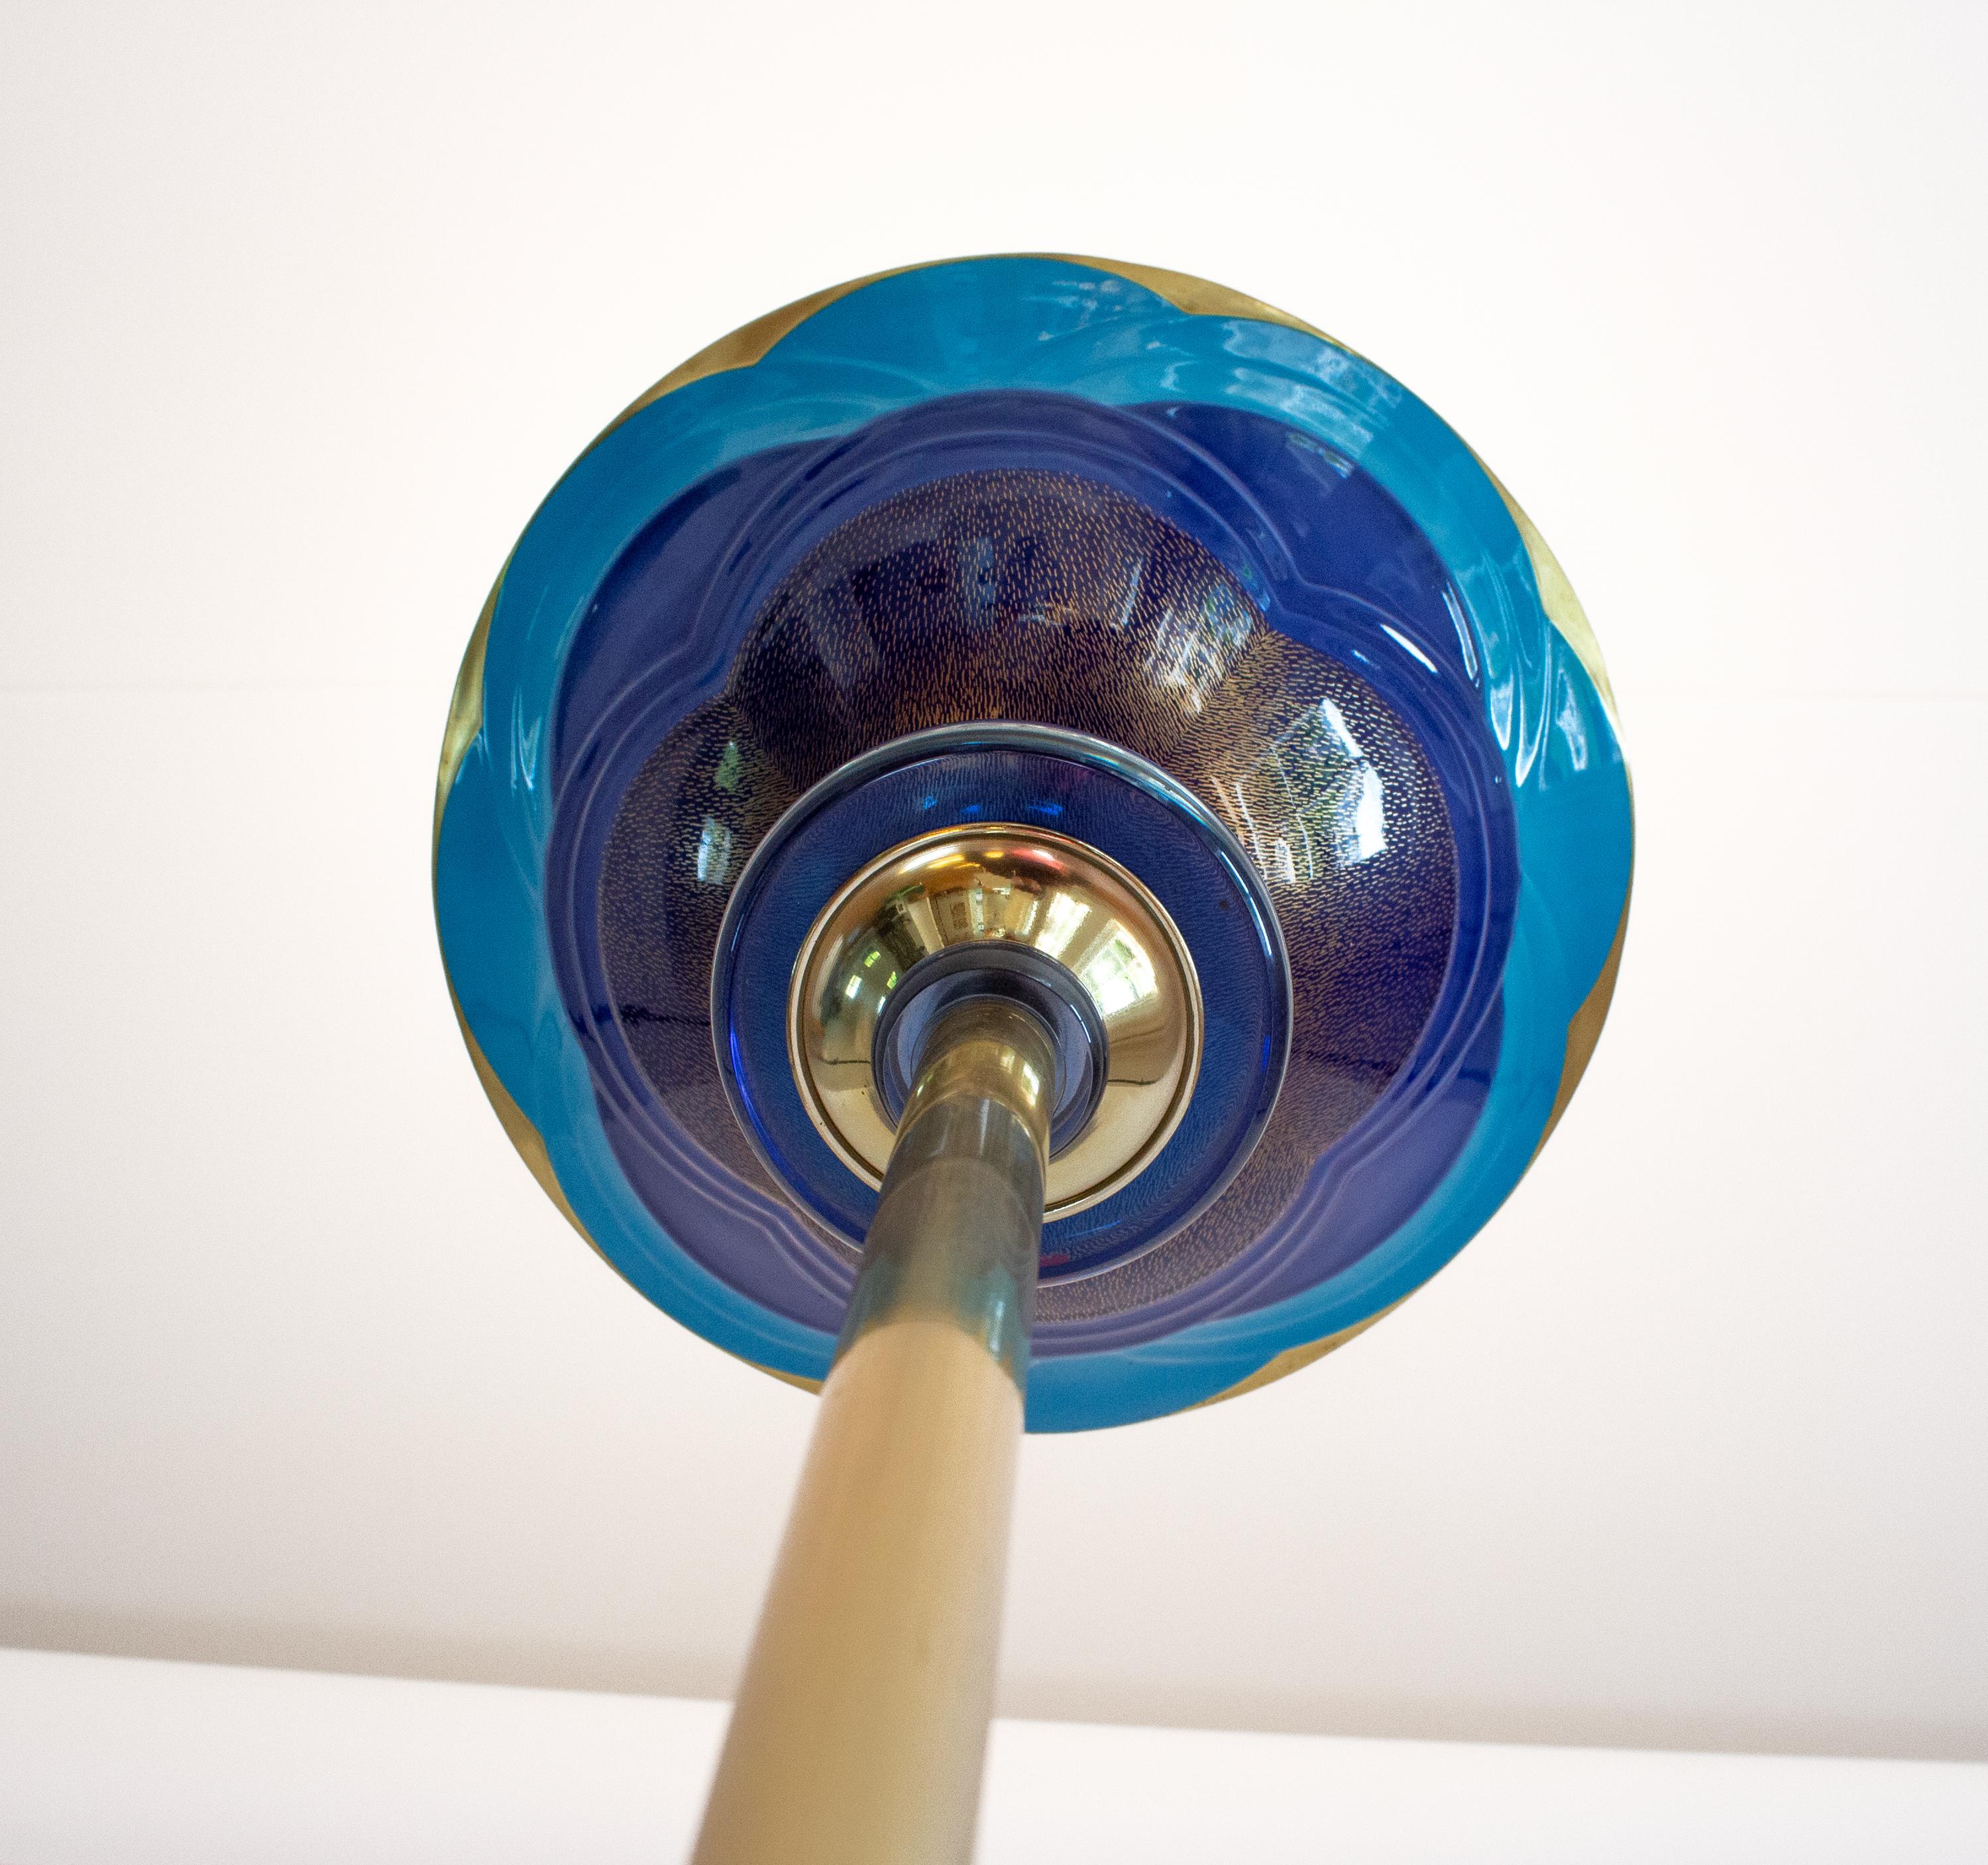 Italienische Stehleuchte aus Porzellan, entworfen und hergestellt von Giulia Mangani in Italien. Eine sehr seltene Stehlampe. Hergestellt aus Messing und Porzellan mit blauen Glasdetails. Aus den 1980er Jahren. In gutem Zustand. Mangani gestempelt.